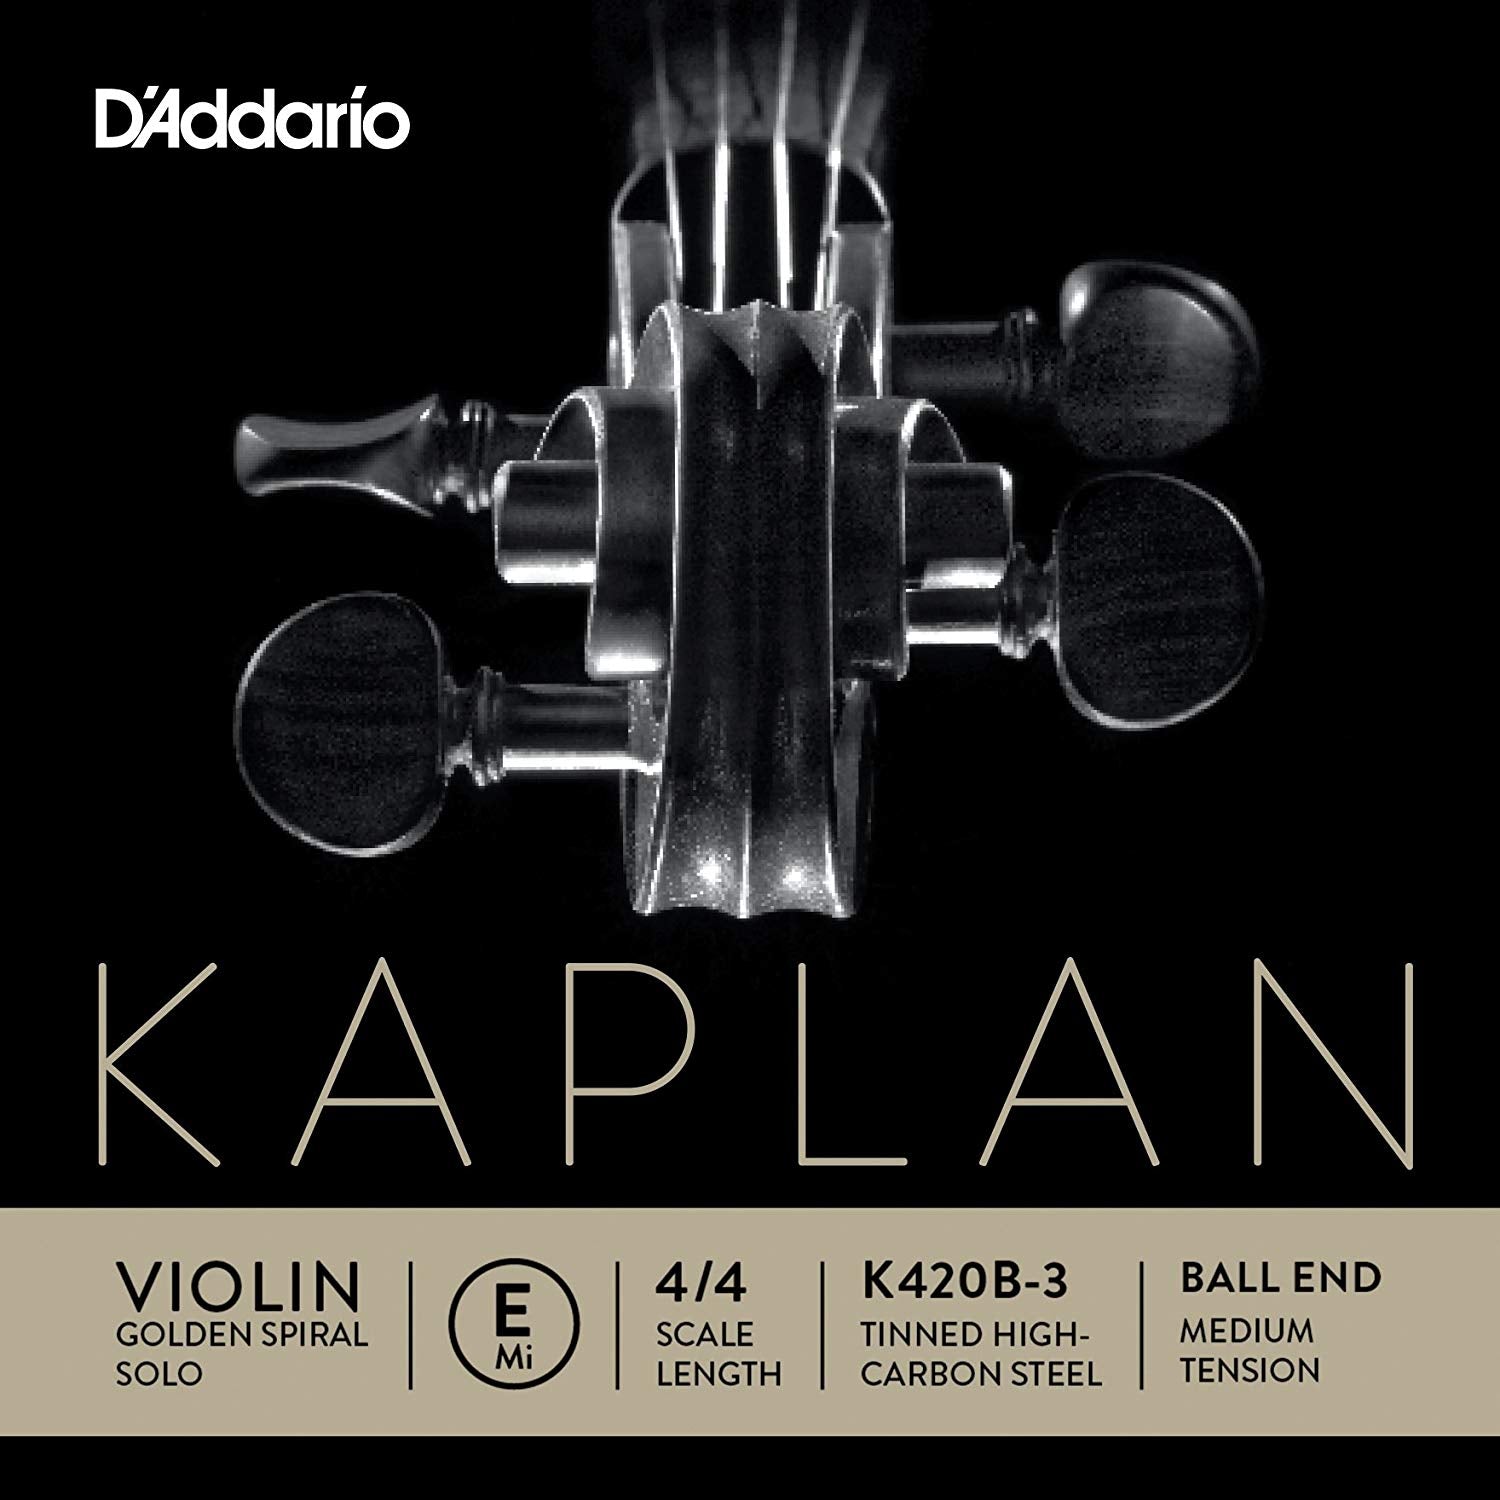 D'Addario Kaplan Golden Spiral Solo Violin E-String